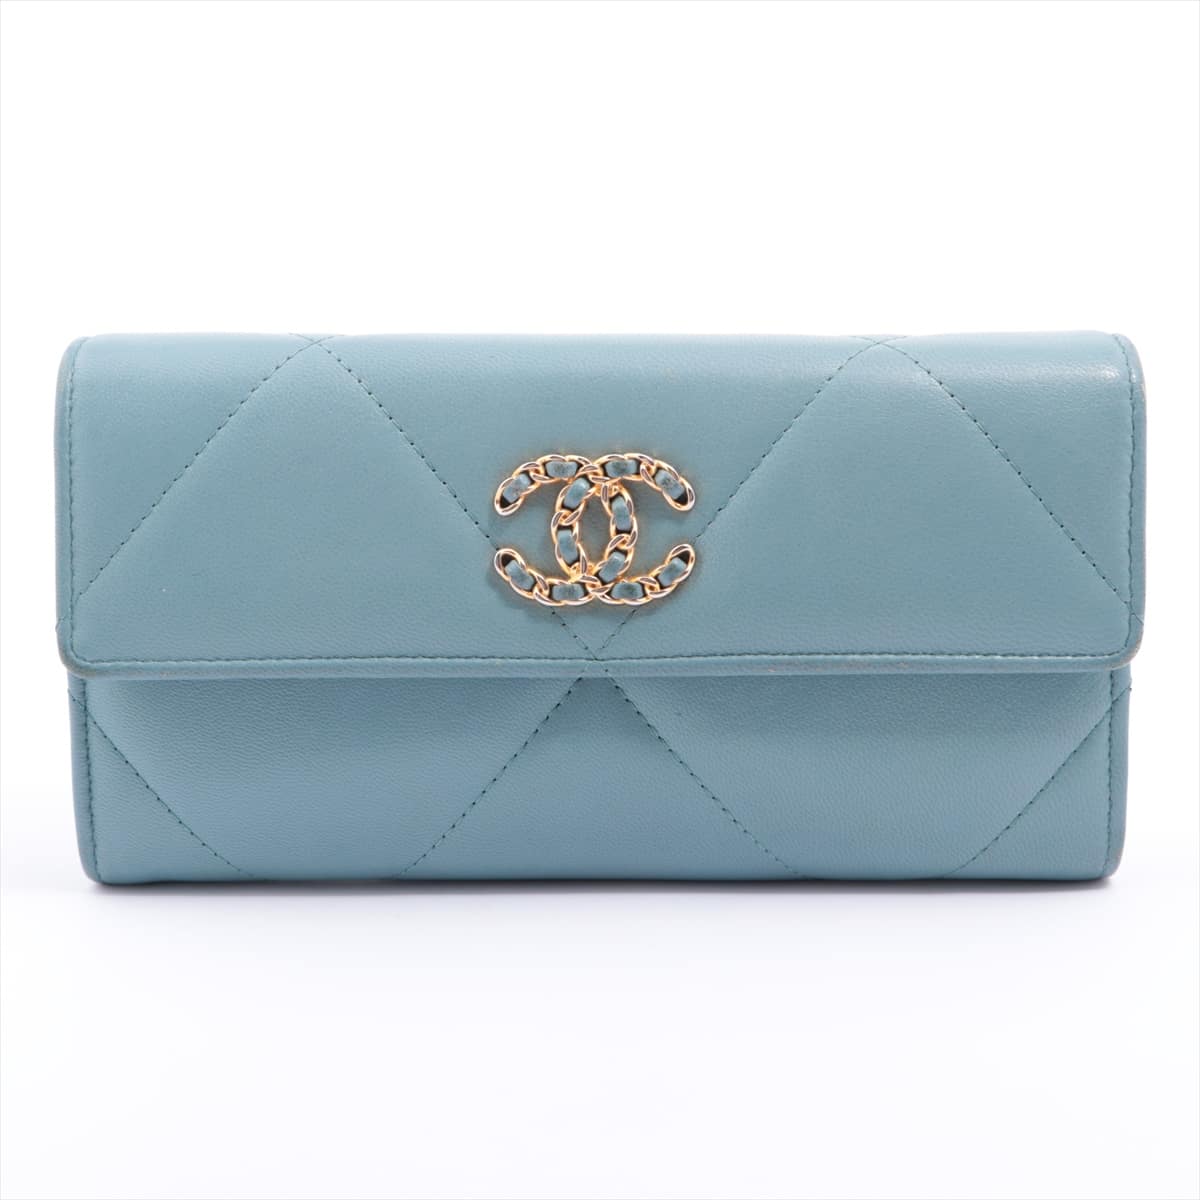 Chanel CHANEL 19 Lambskin Wallet Light blue Gold Metal fittings 29th